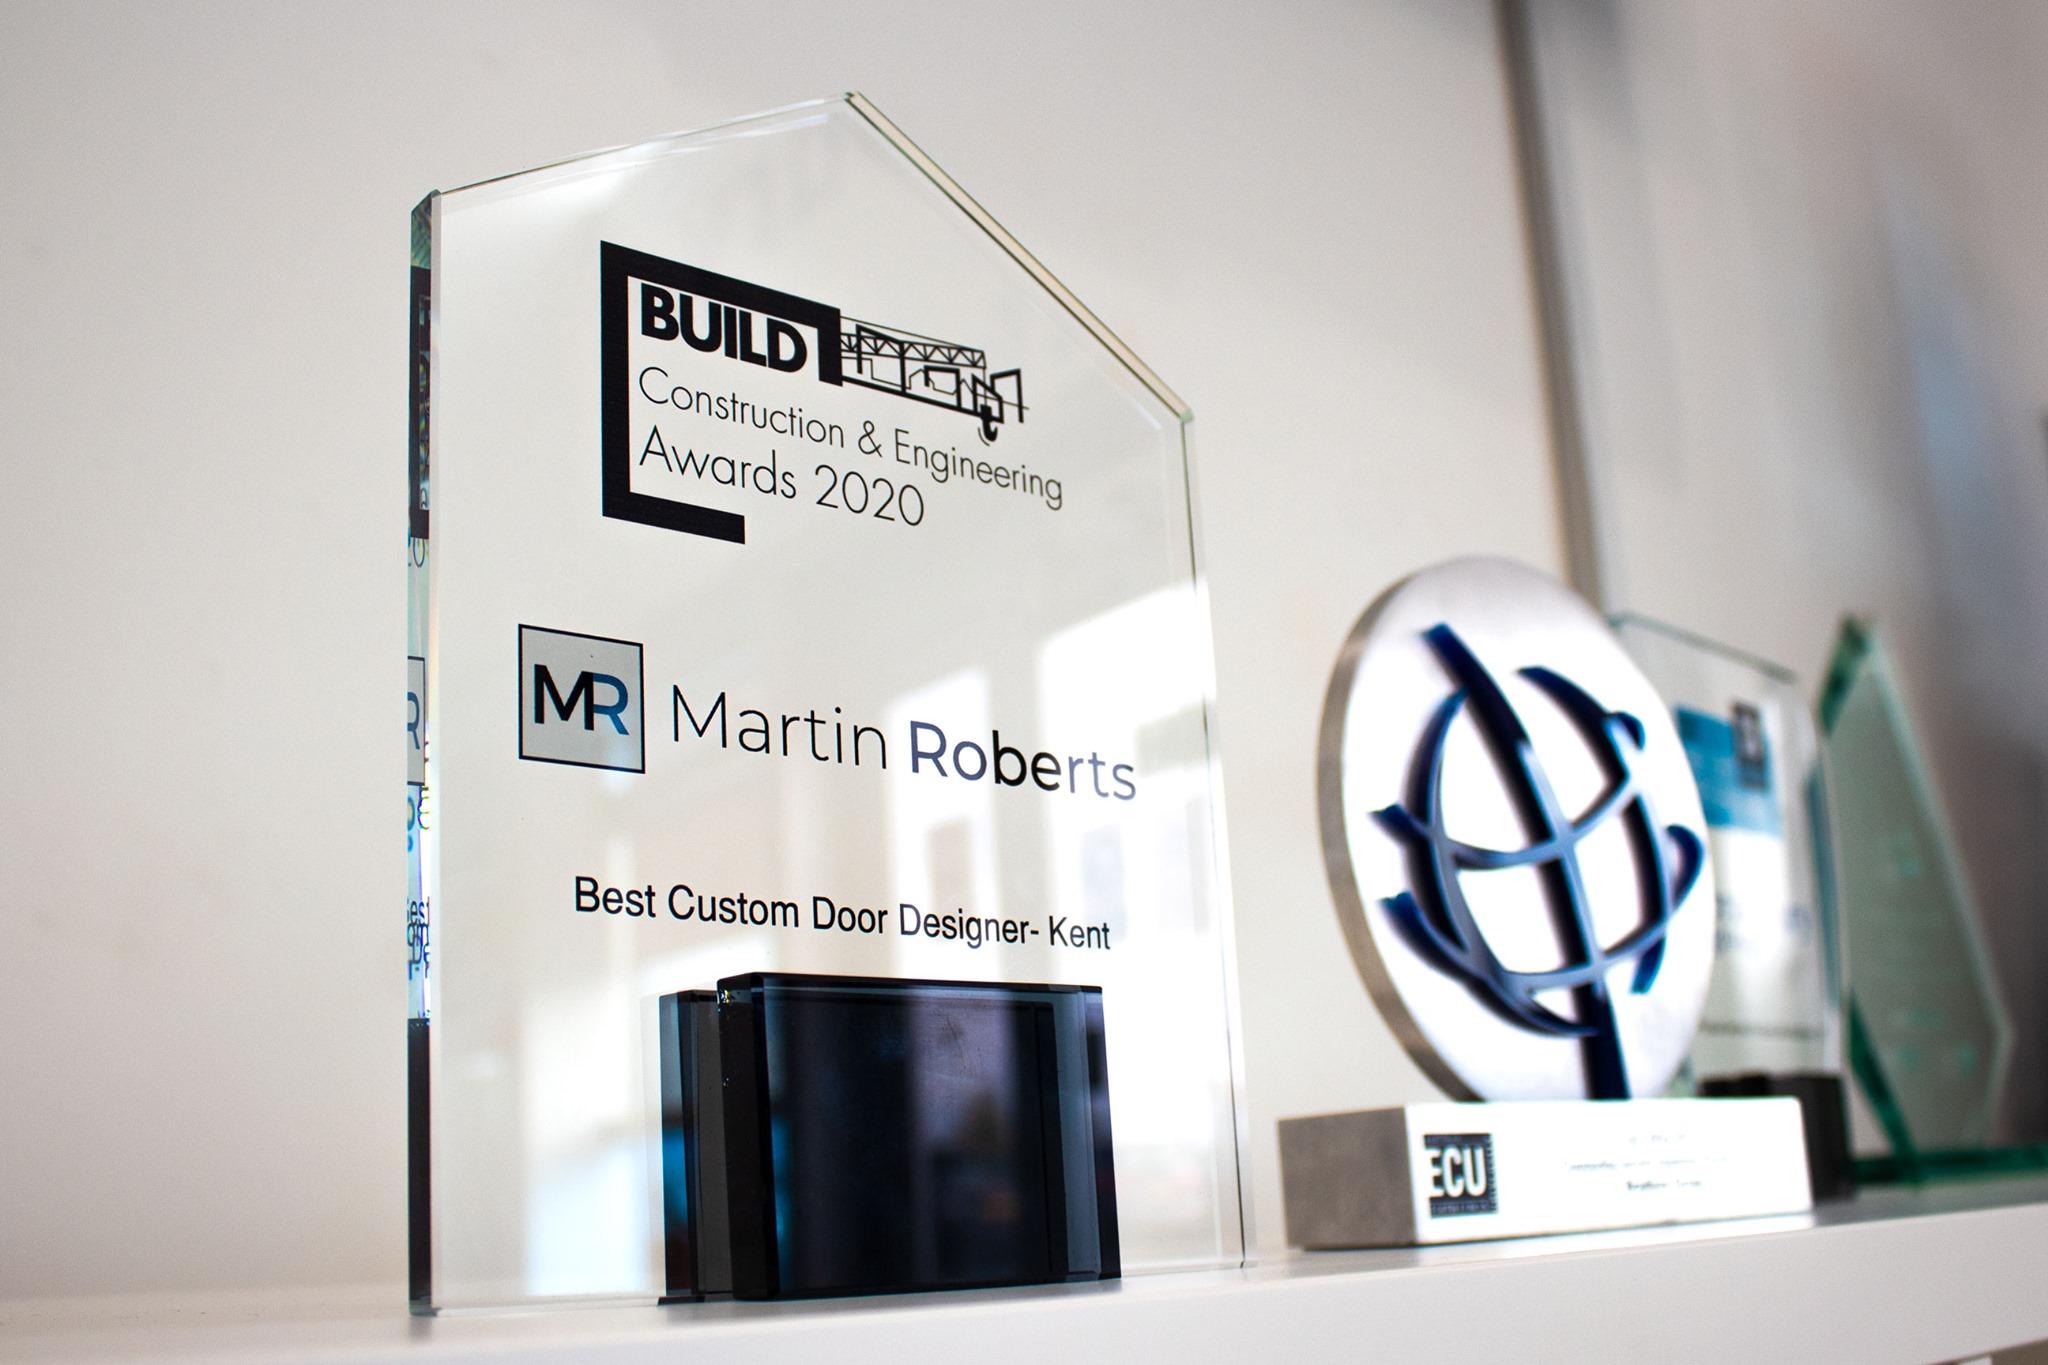 Martin Roberts Wins Best Custom Door Designer in Kent for Steel Doors.